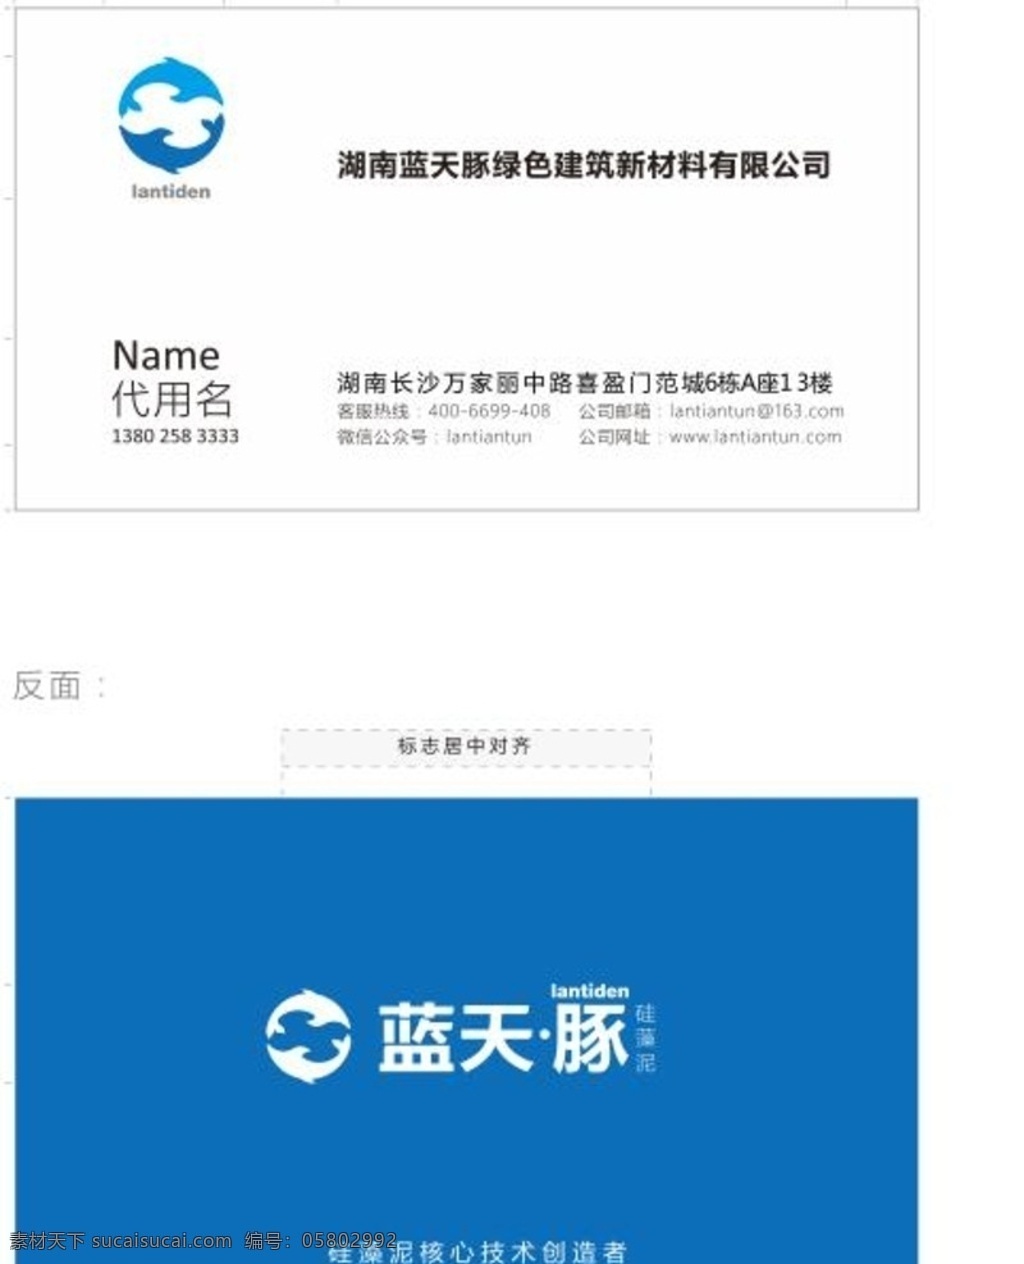 蓝天 豚 经销商 名片 模板 最新 logo 尺寸规格 名片尺寸 位置 名片卡片